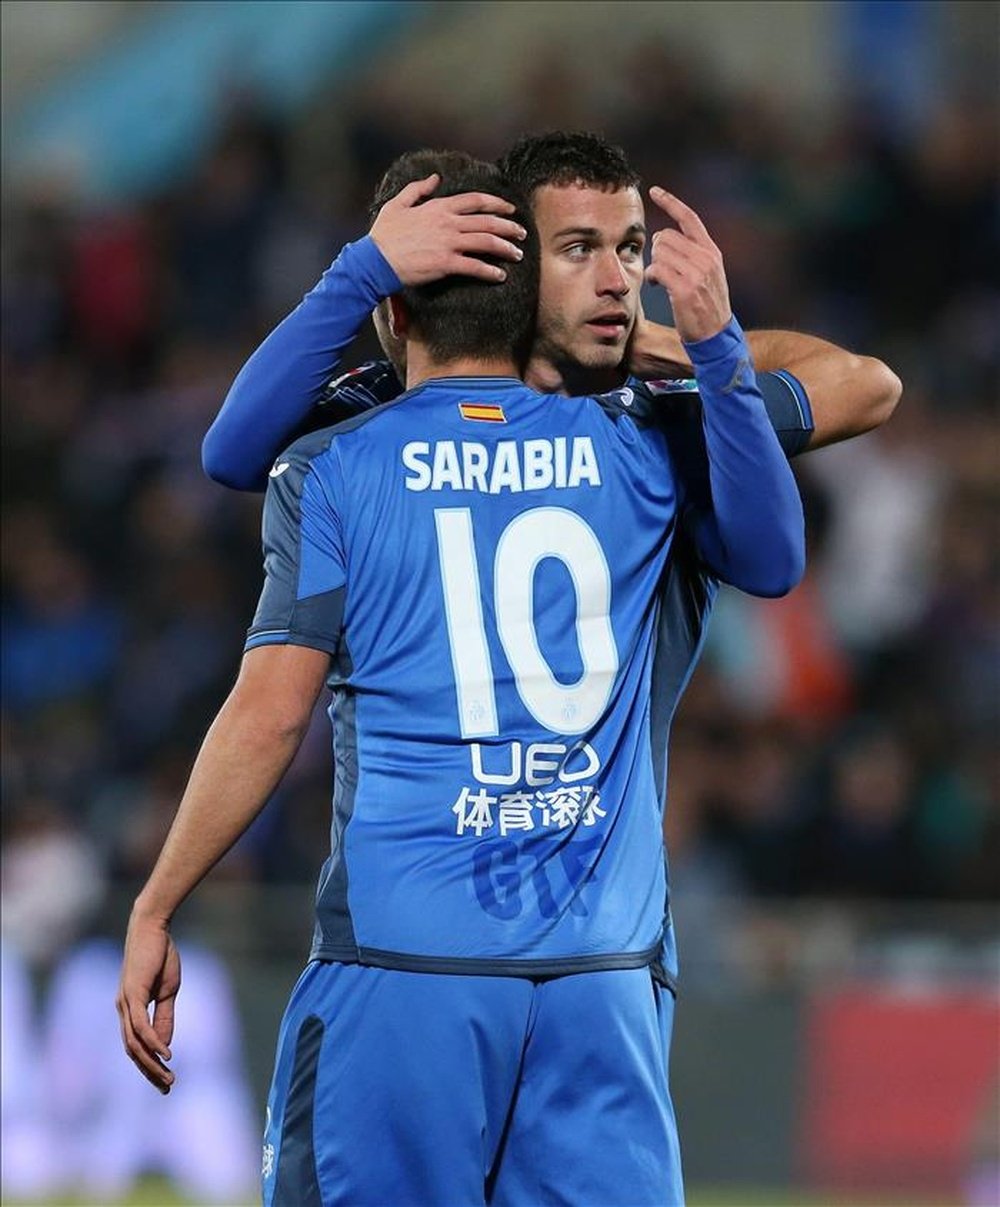 El delantero del Getafe Álvaro Vázquez celebra con su compañero, el centrocampista Pablo Sarabia, un gol. EFE/Archivo